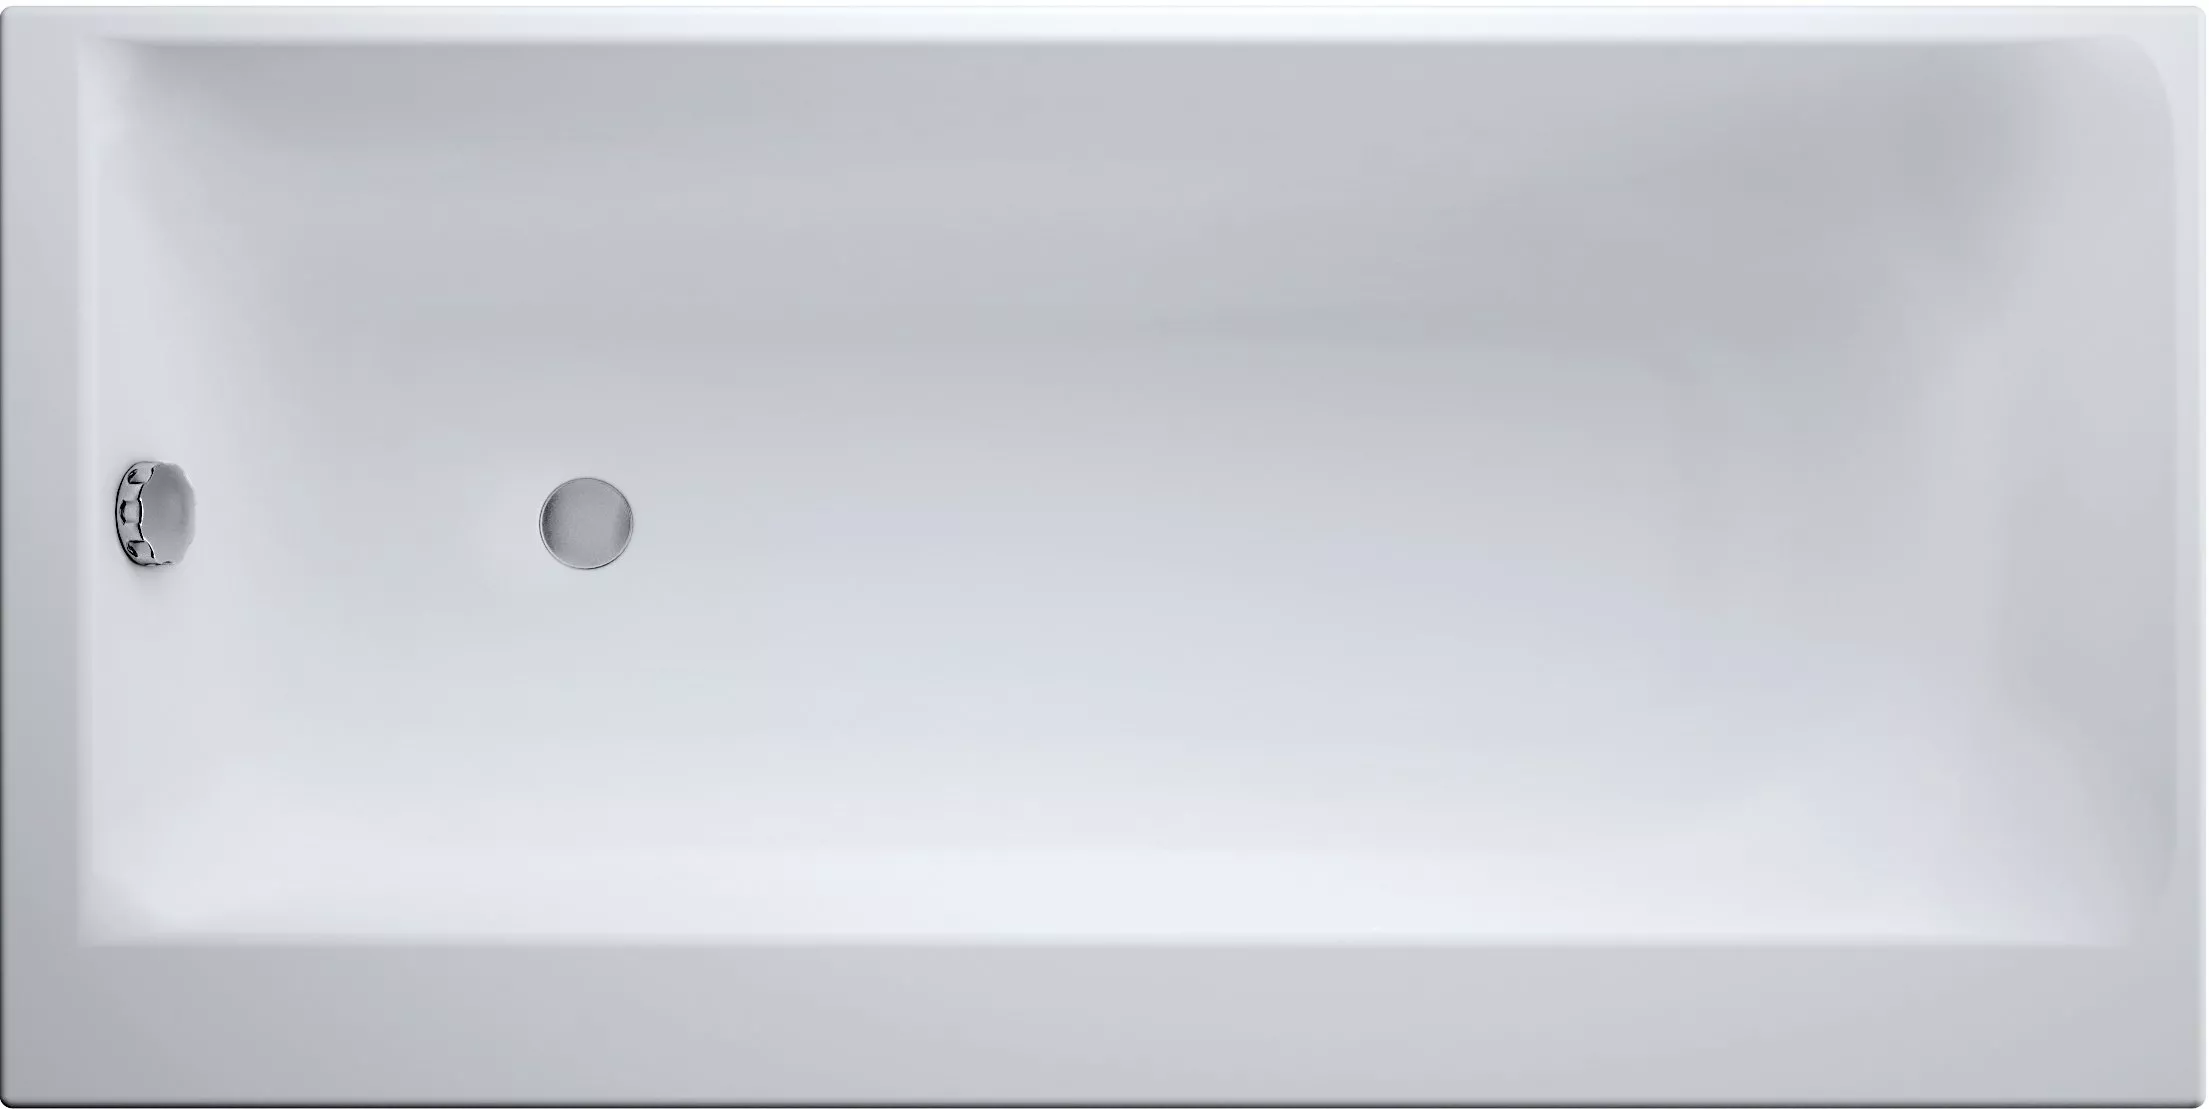 Акриловая ванна Cersanit Smart 170 R, цвет белый WP-SMART*170-R - фото 1